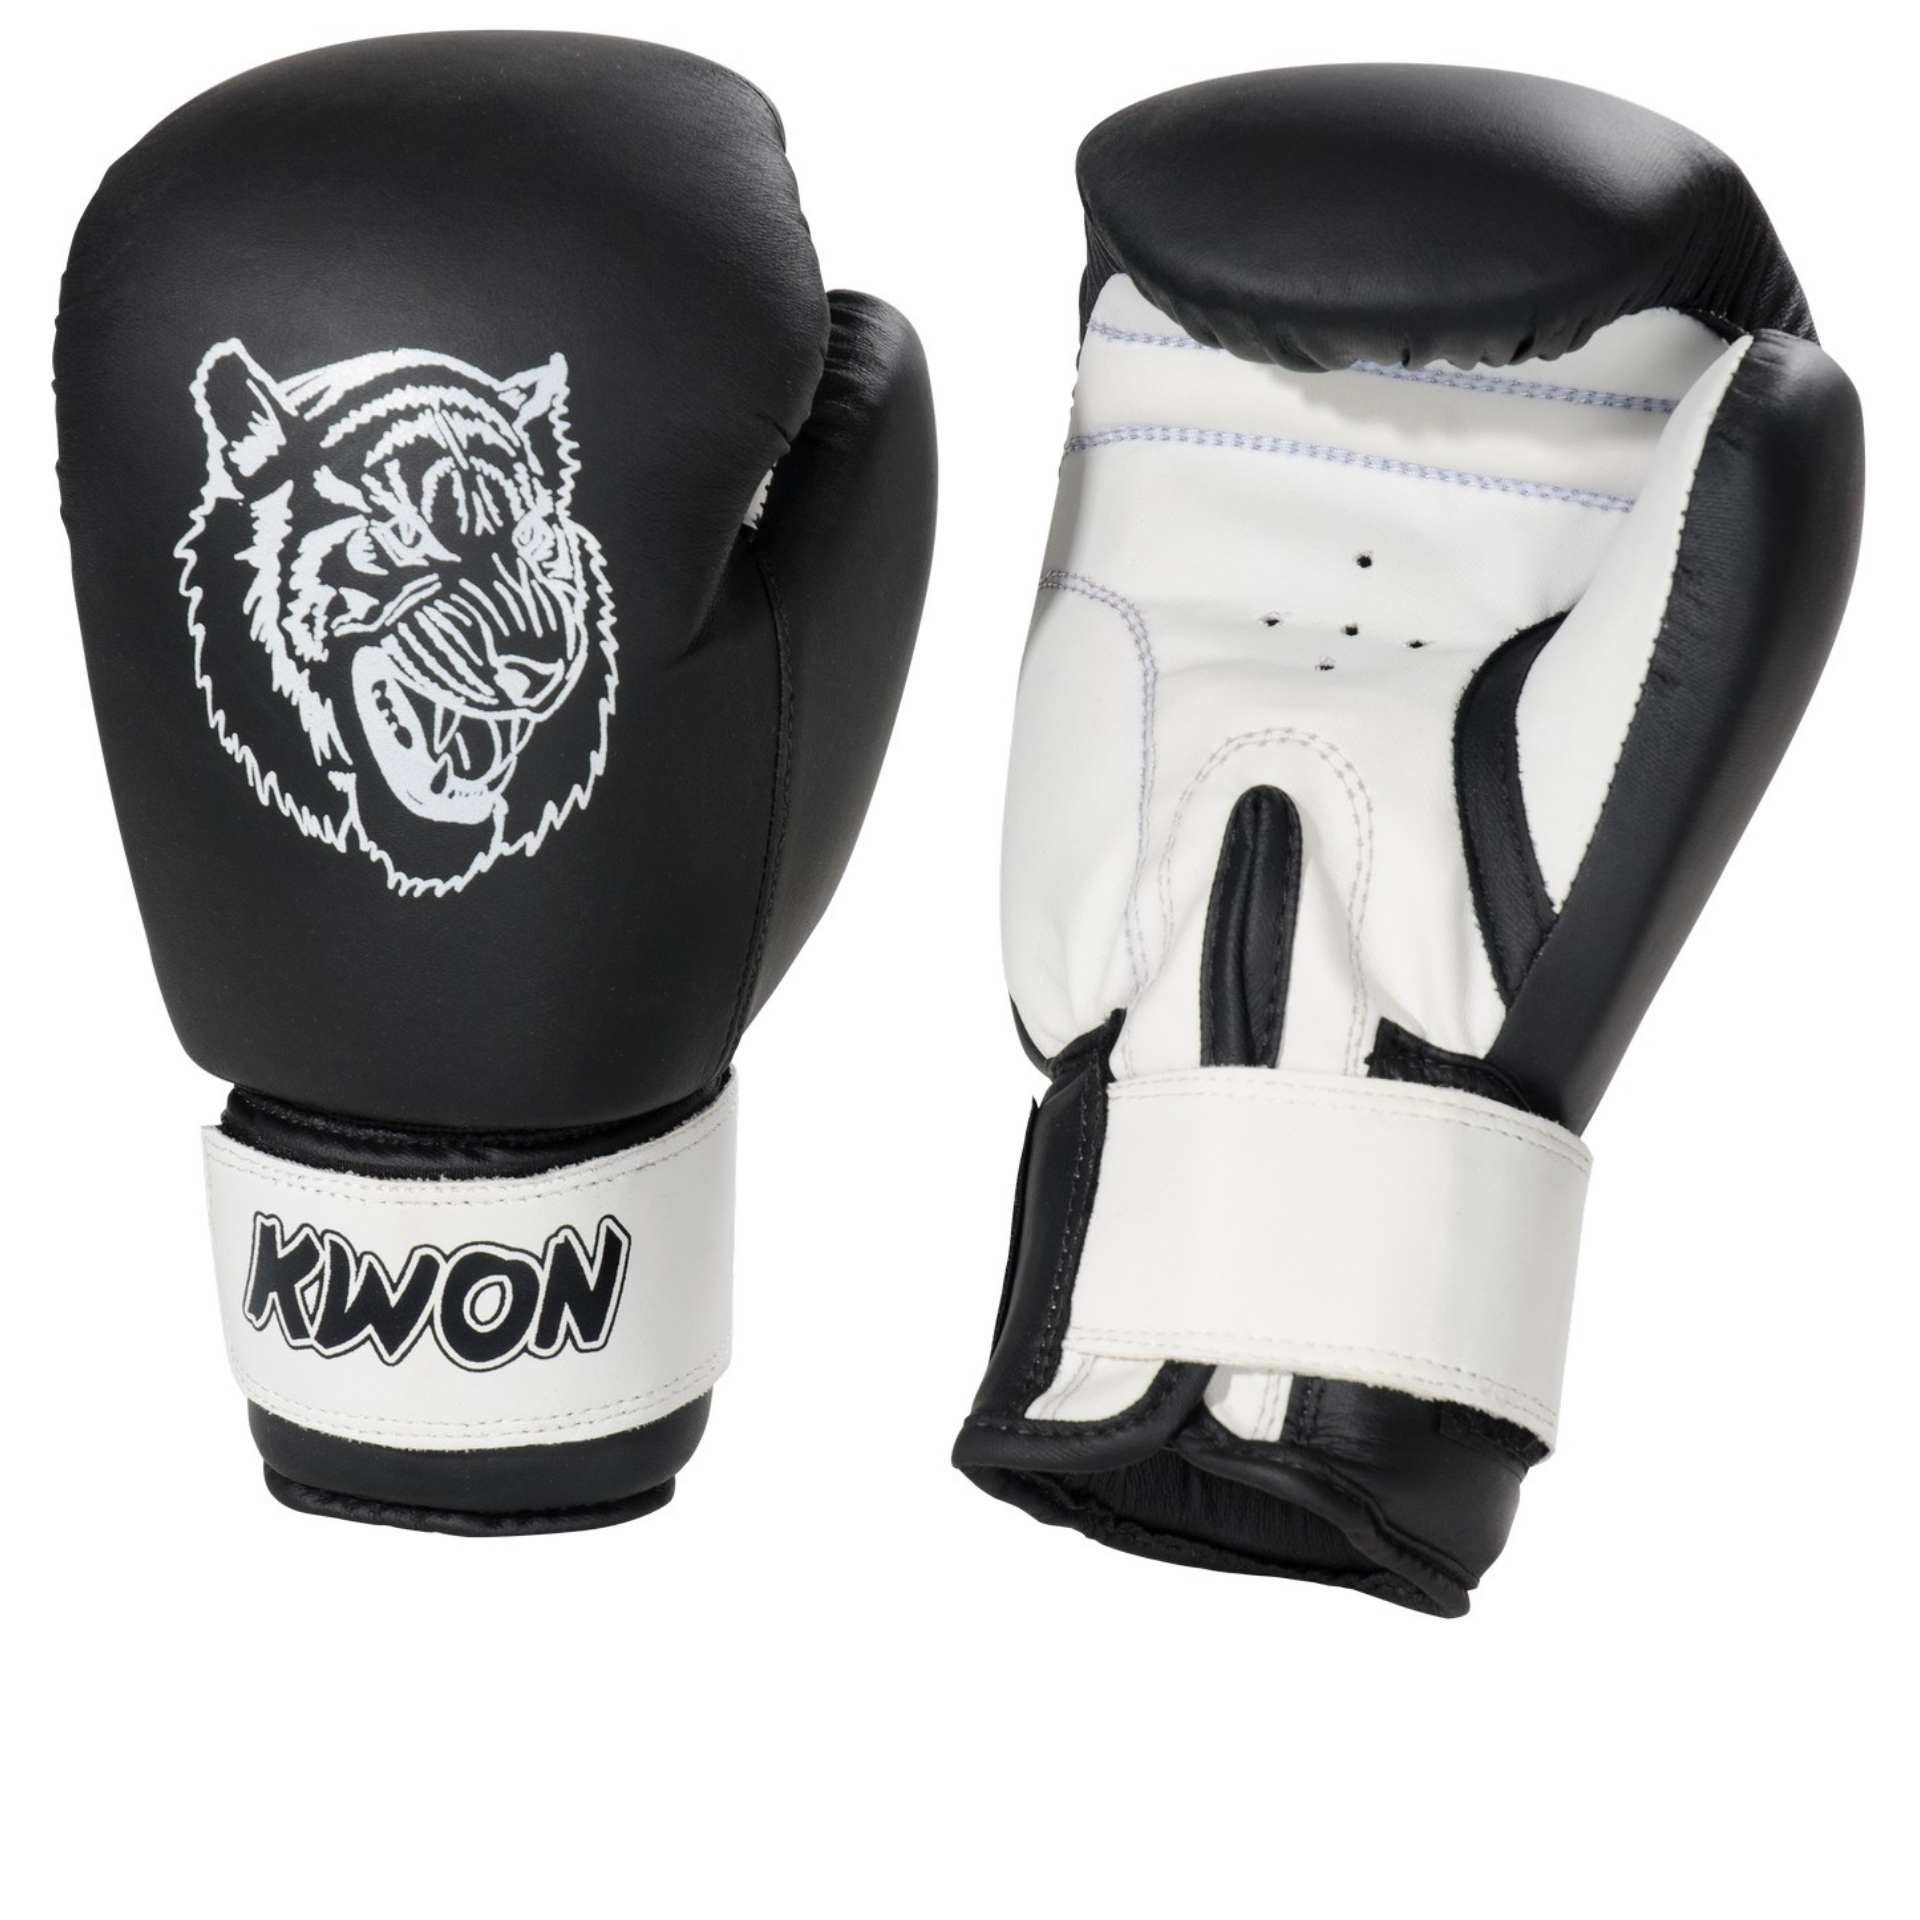 Kwon Kinder Boxhandschuhe Tiger - schwarz/weiß